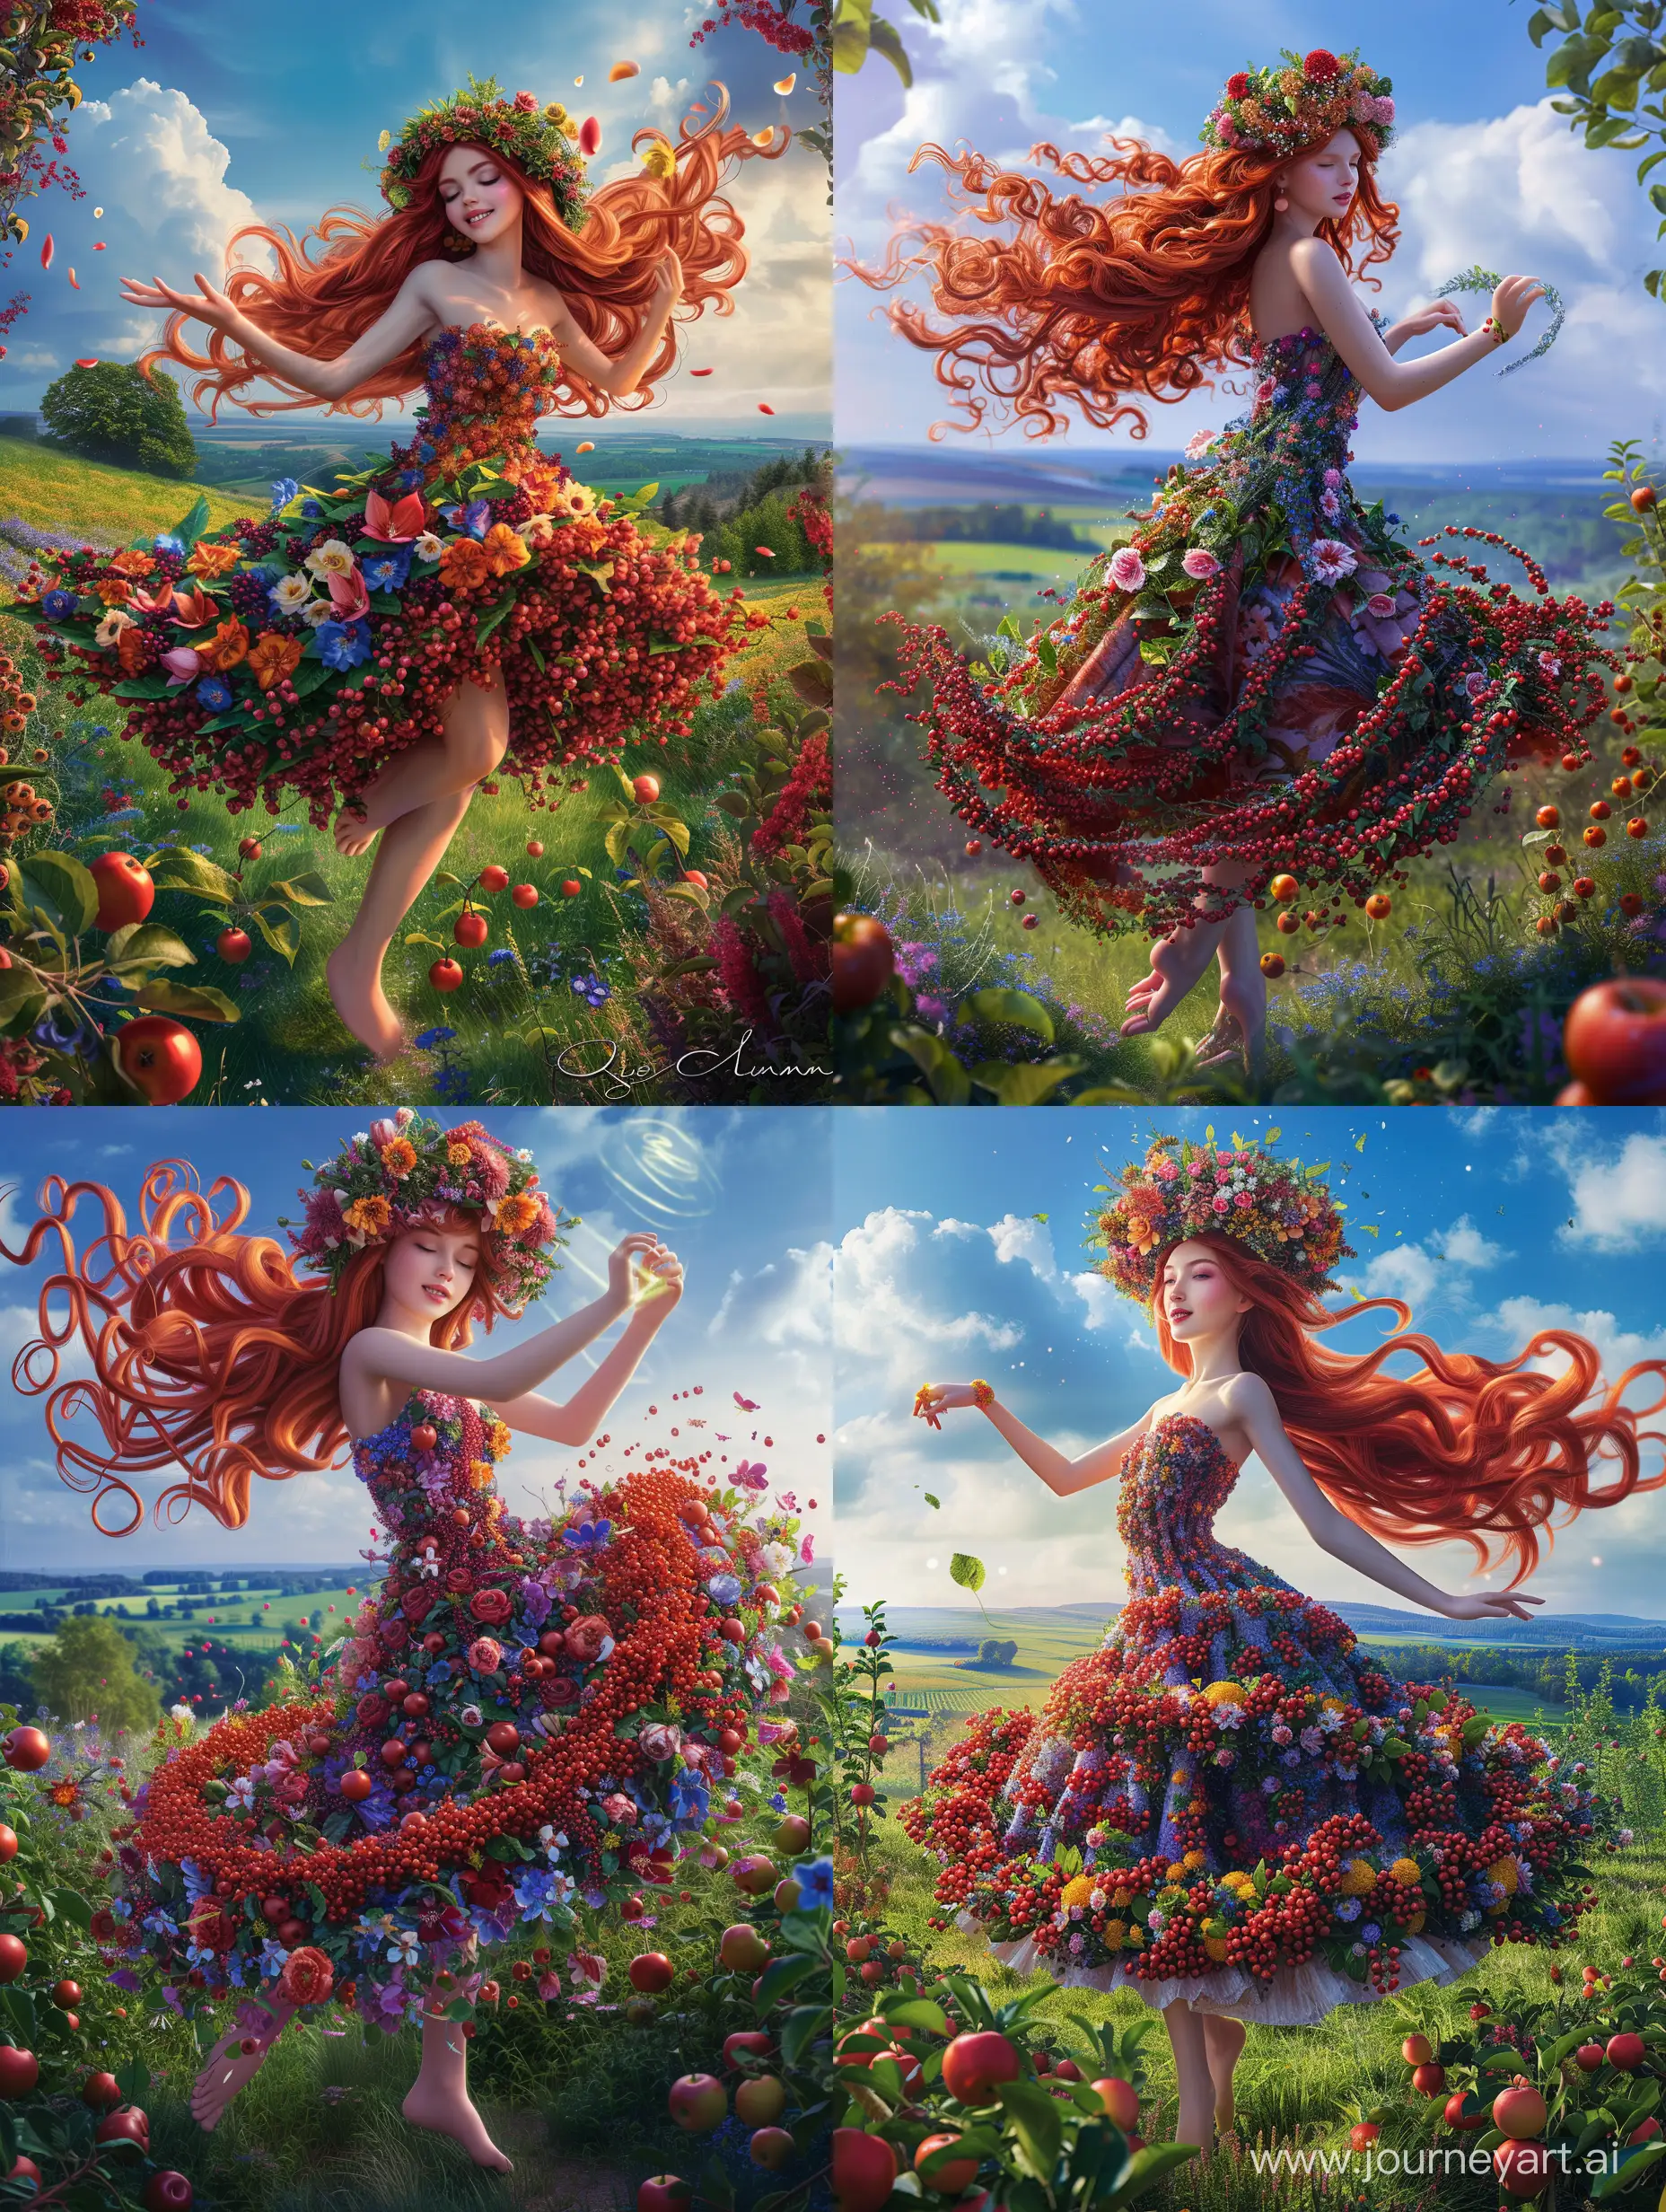 Королева-лето, невероятно красивая девушка в полный рост, с красными длинными волосами, на голове  венок из цветов, в платье из ягод и цветов кружится танцует в летнем саду, красивый пейзаж на фоне, синее небо, растут молодые яблоки, продолжение платья из цветов, завихряются у подола платья, неоновые переливы, высокое разрешение, эстетично, красиво, яркое освещение, фотореализм